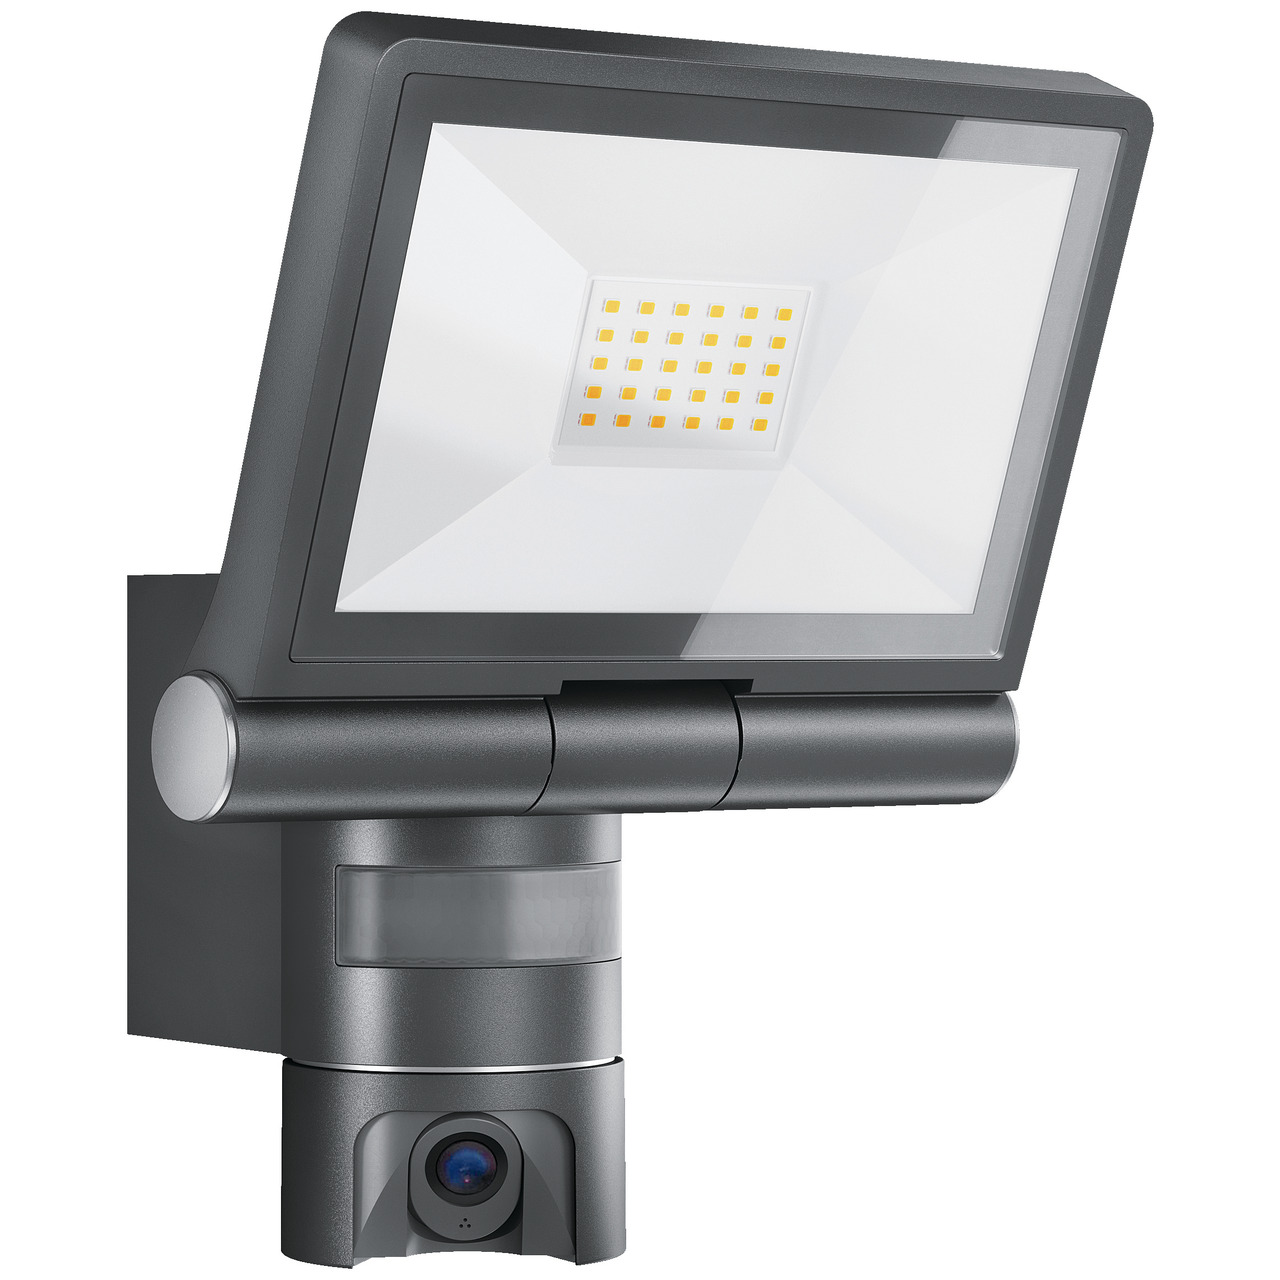 Steinel IP-berwachungskamera mit LED-Scheinwerfer XLED CAM1 S ANT- HD (720p)- App